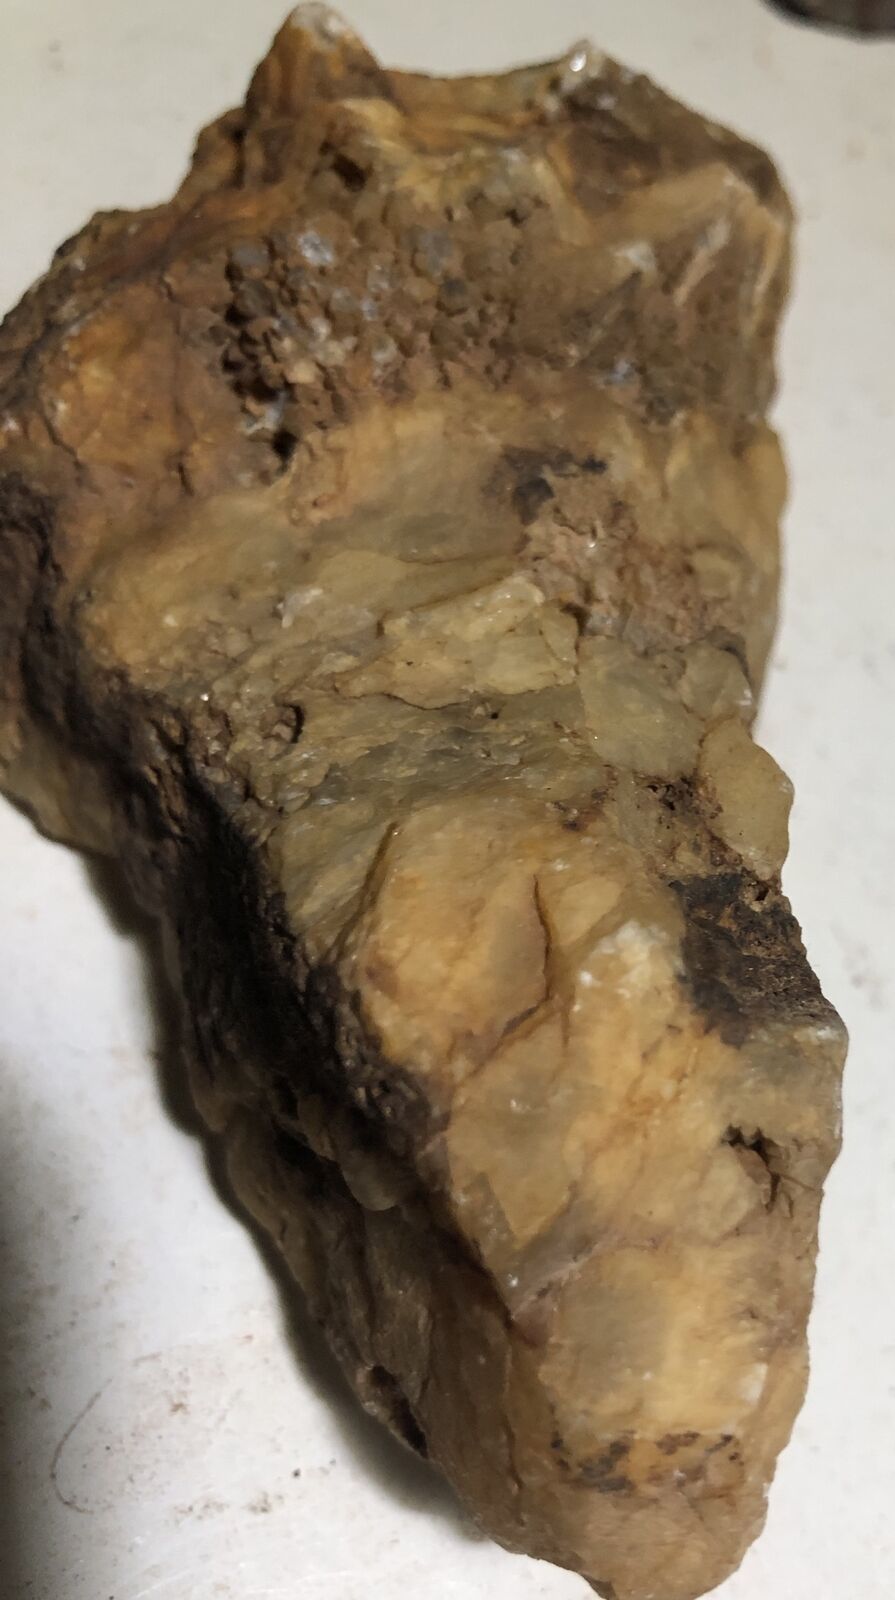 Rare Gold and silver Quartz Ore - High Grade Mineral Specimen 14 Oz Rock